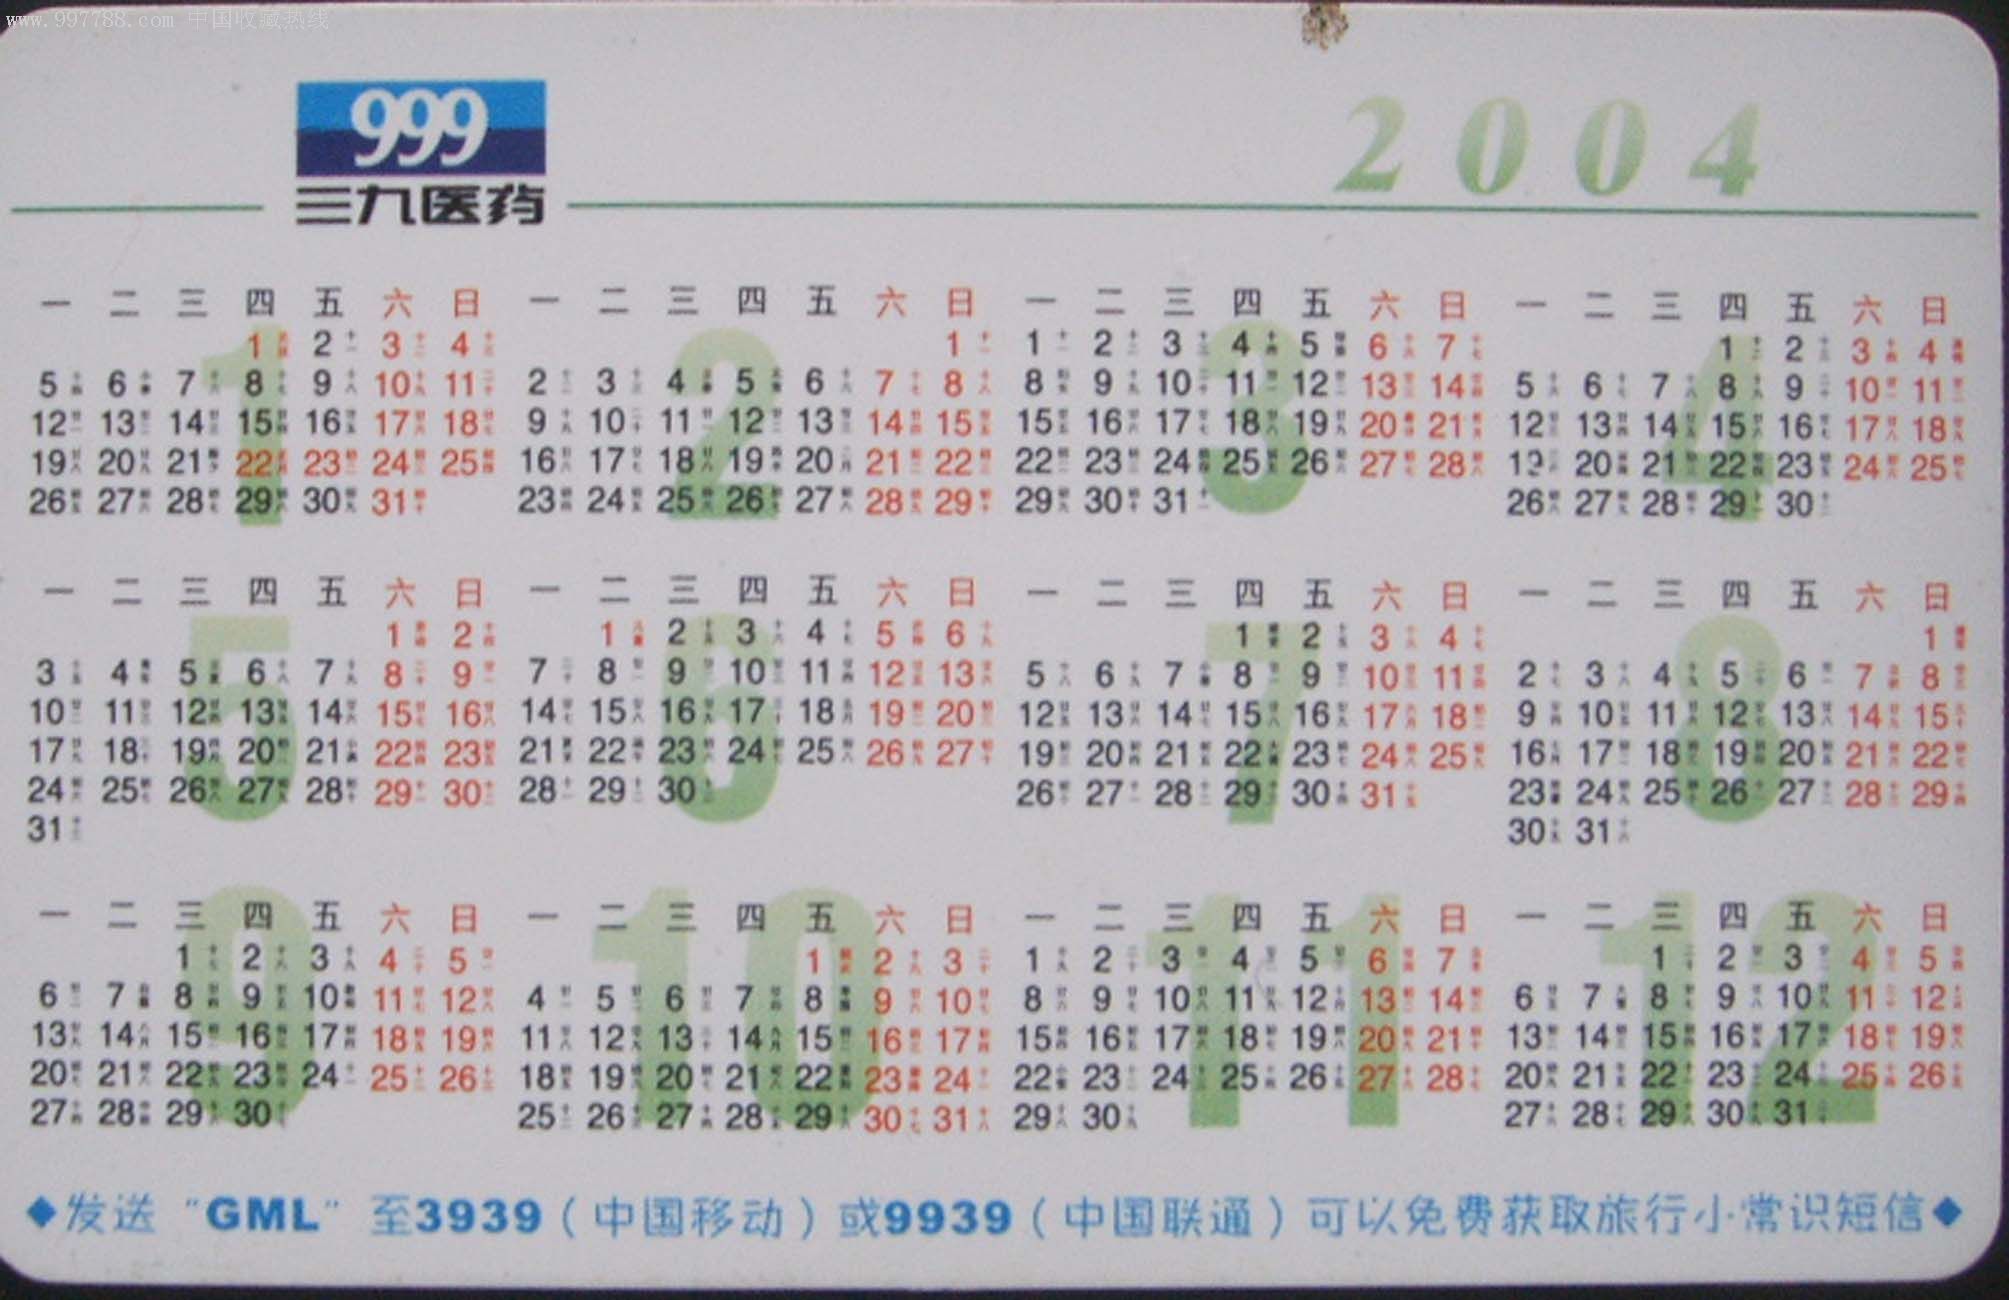 冲四钻特价999三九医药2004年年历卡